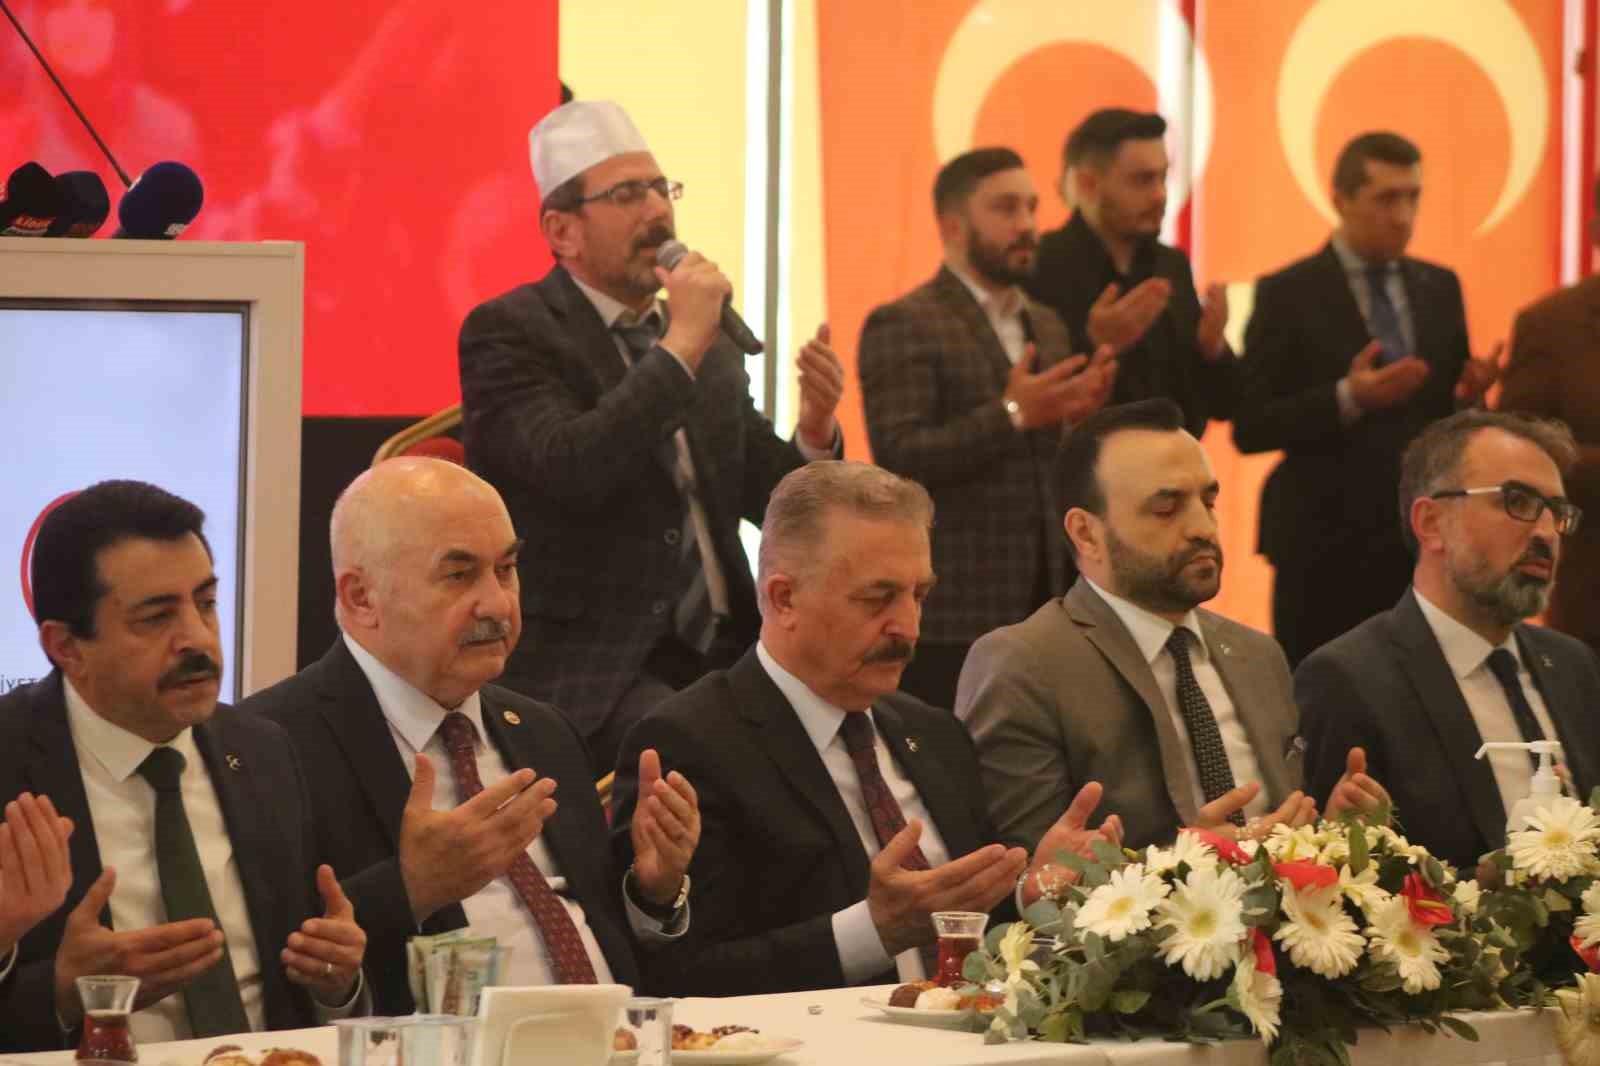 MHP Genel Sekreteri Büyükataman: “Kılıçdaroğlu’nun aday olduğunu duyan FETÖ’cüler dönüş biletlerini almış”